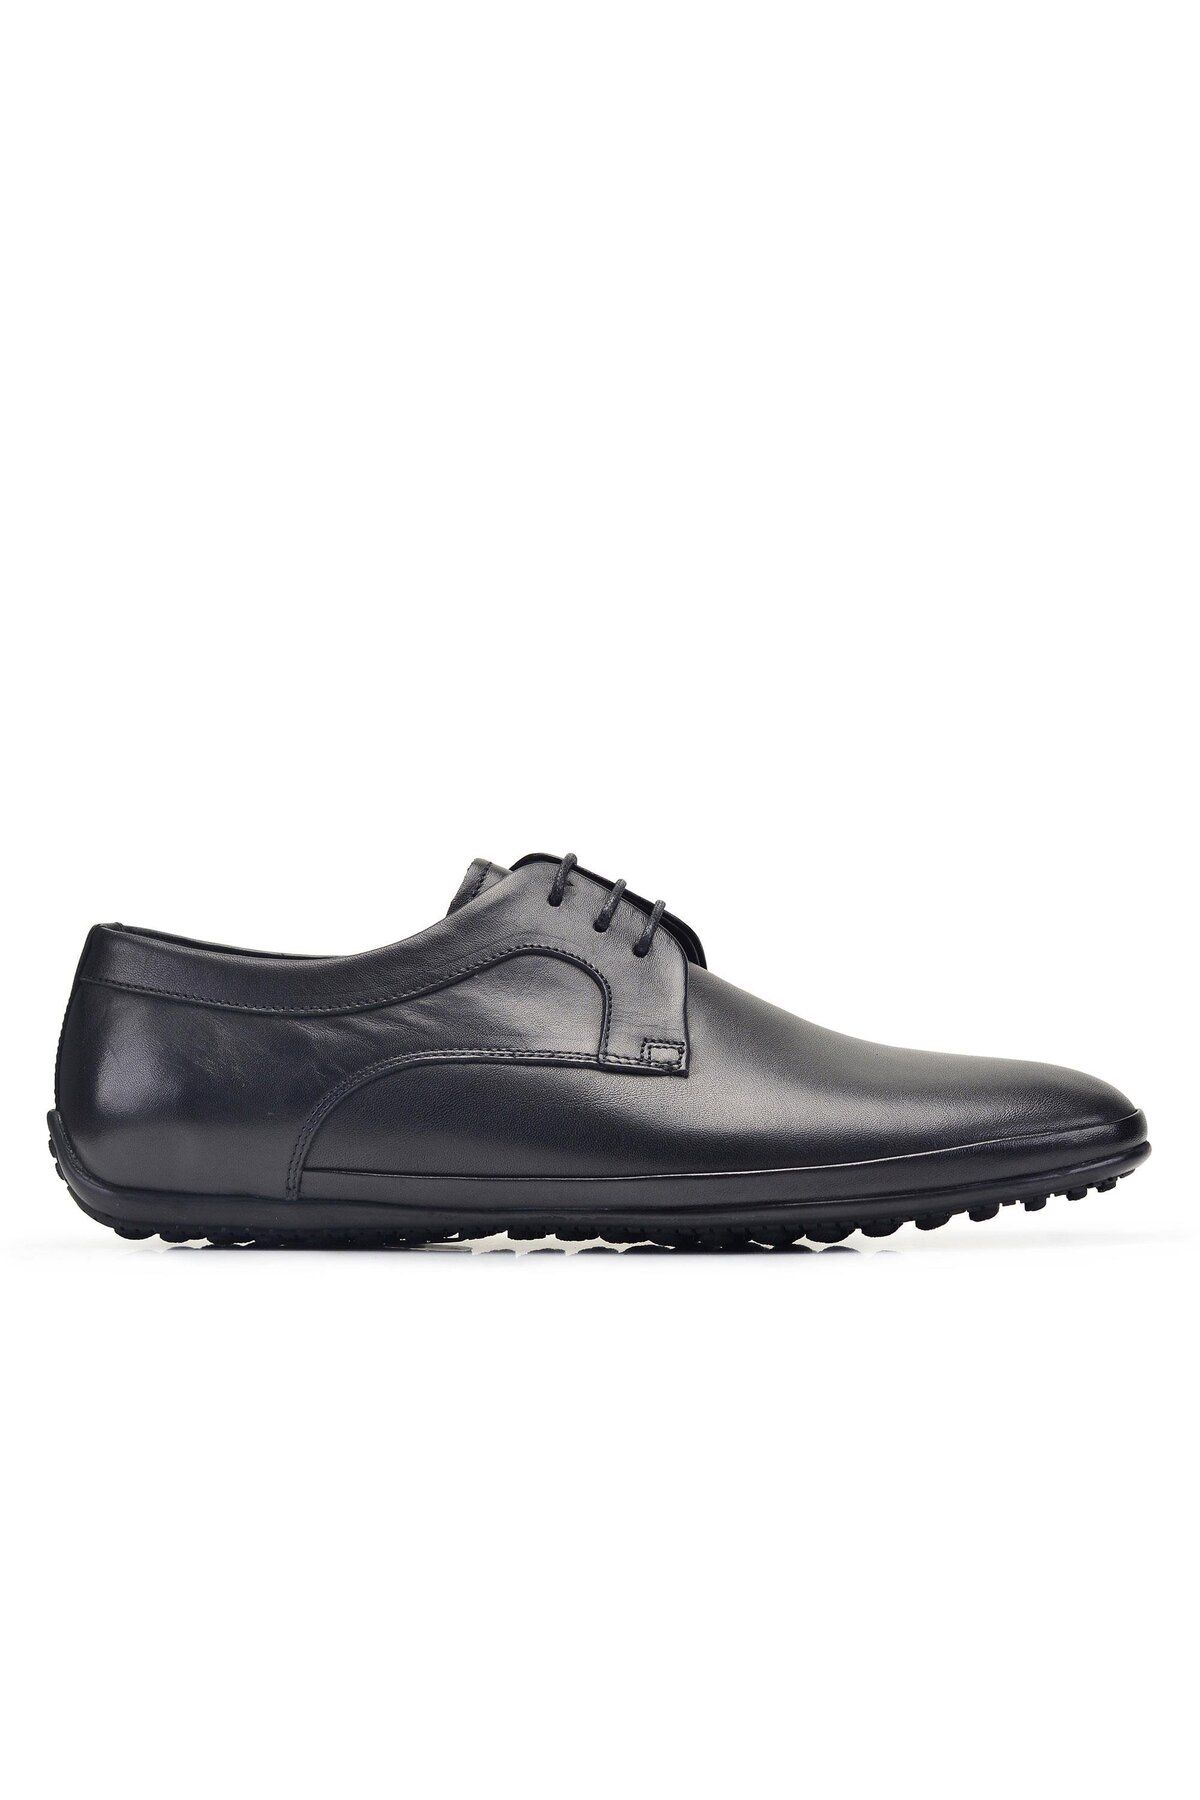 Nevzat Onay Siyah Günlük Bağcıklı Erkek Ayakkabı -49171-